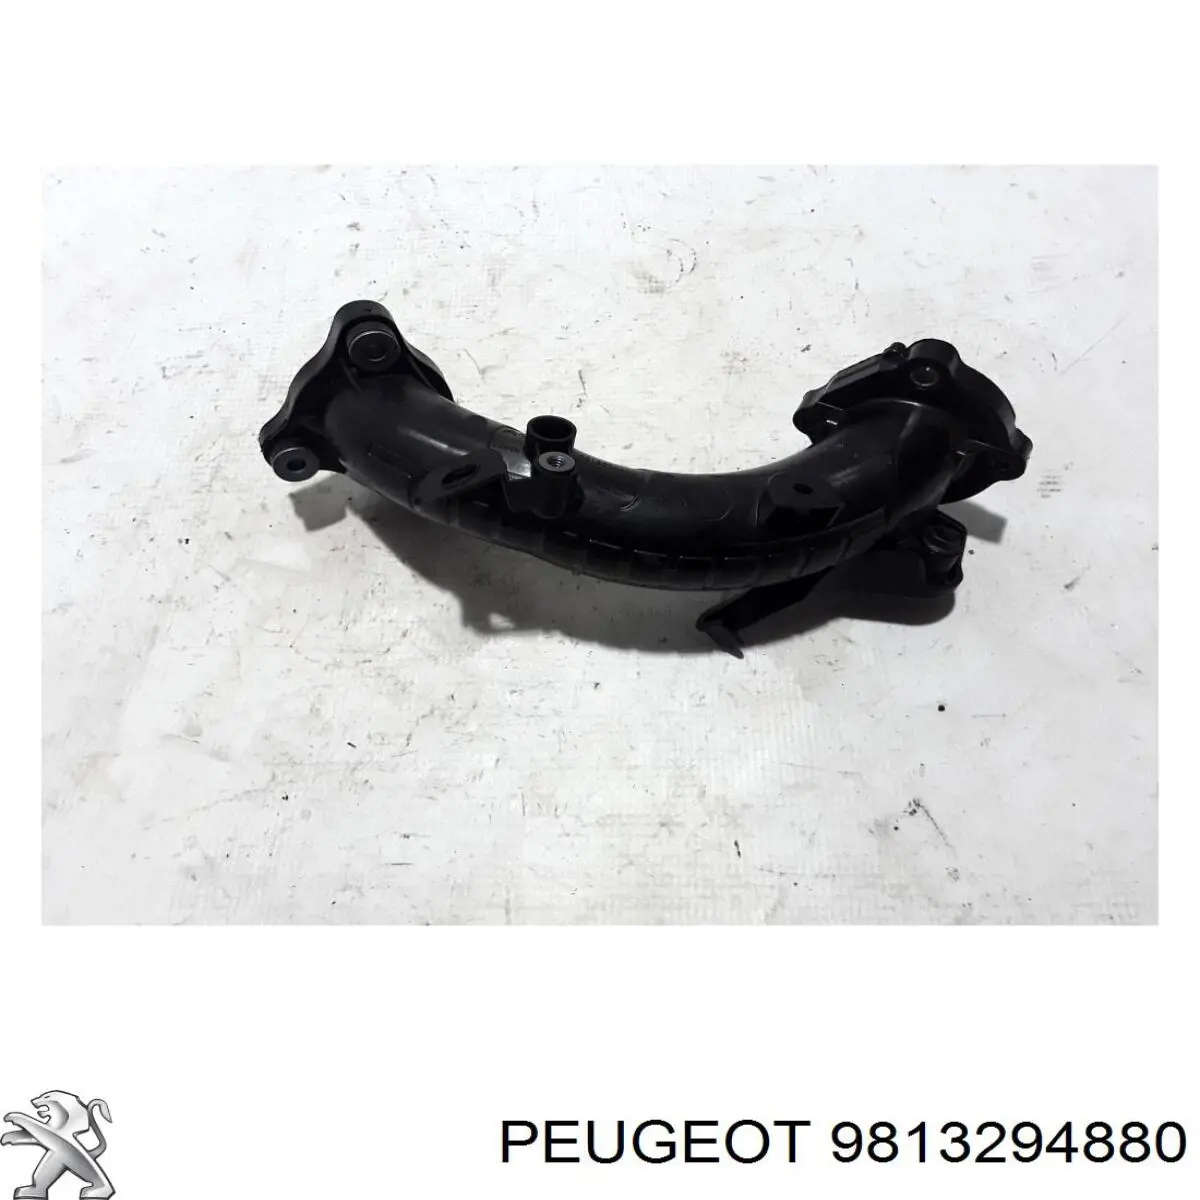 9813294880 Peugeot/Citroen tubo flexible de aspiración, cuerpo mariposa